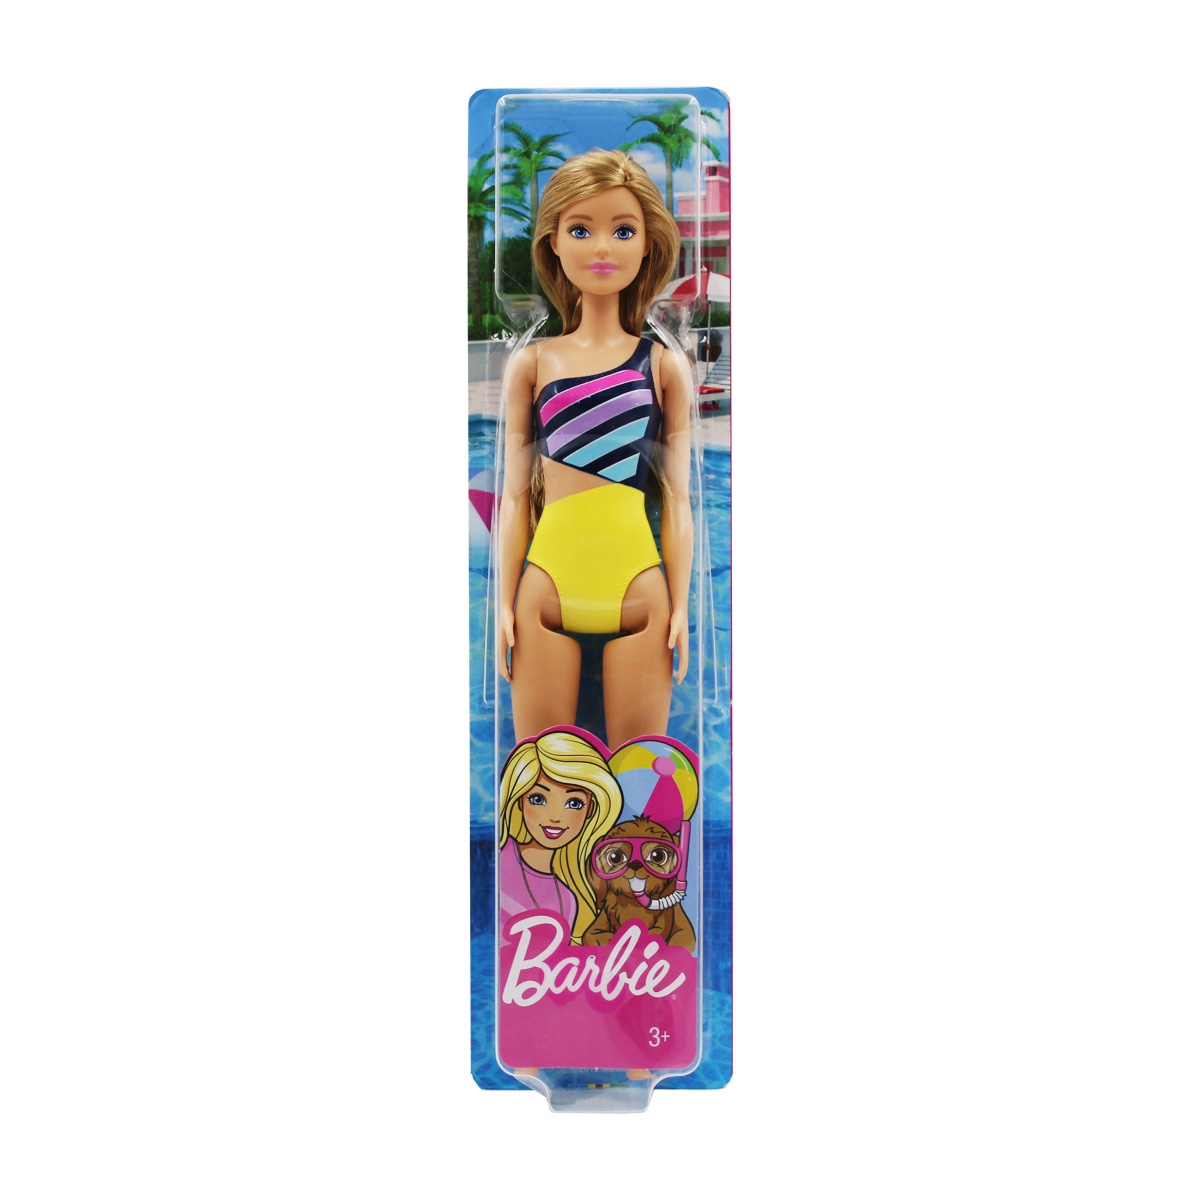 Kit 20 Looks Sortidos Roupinhas Para Barbie